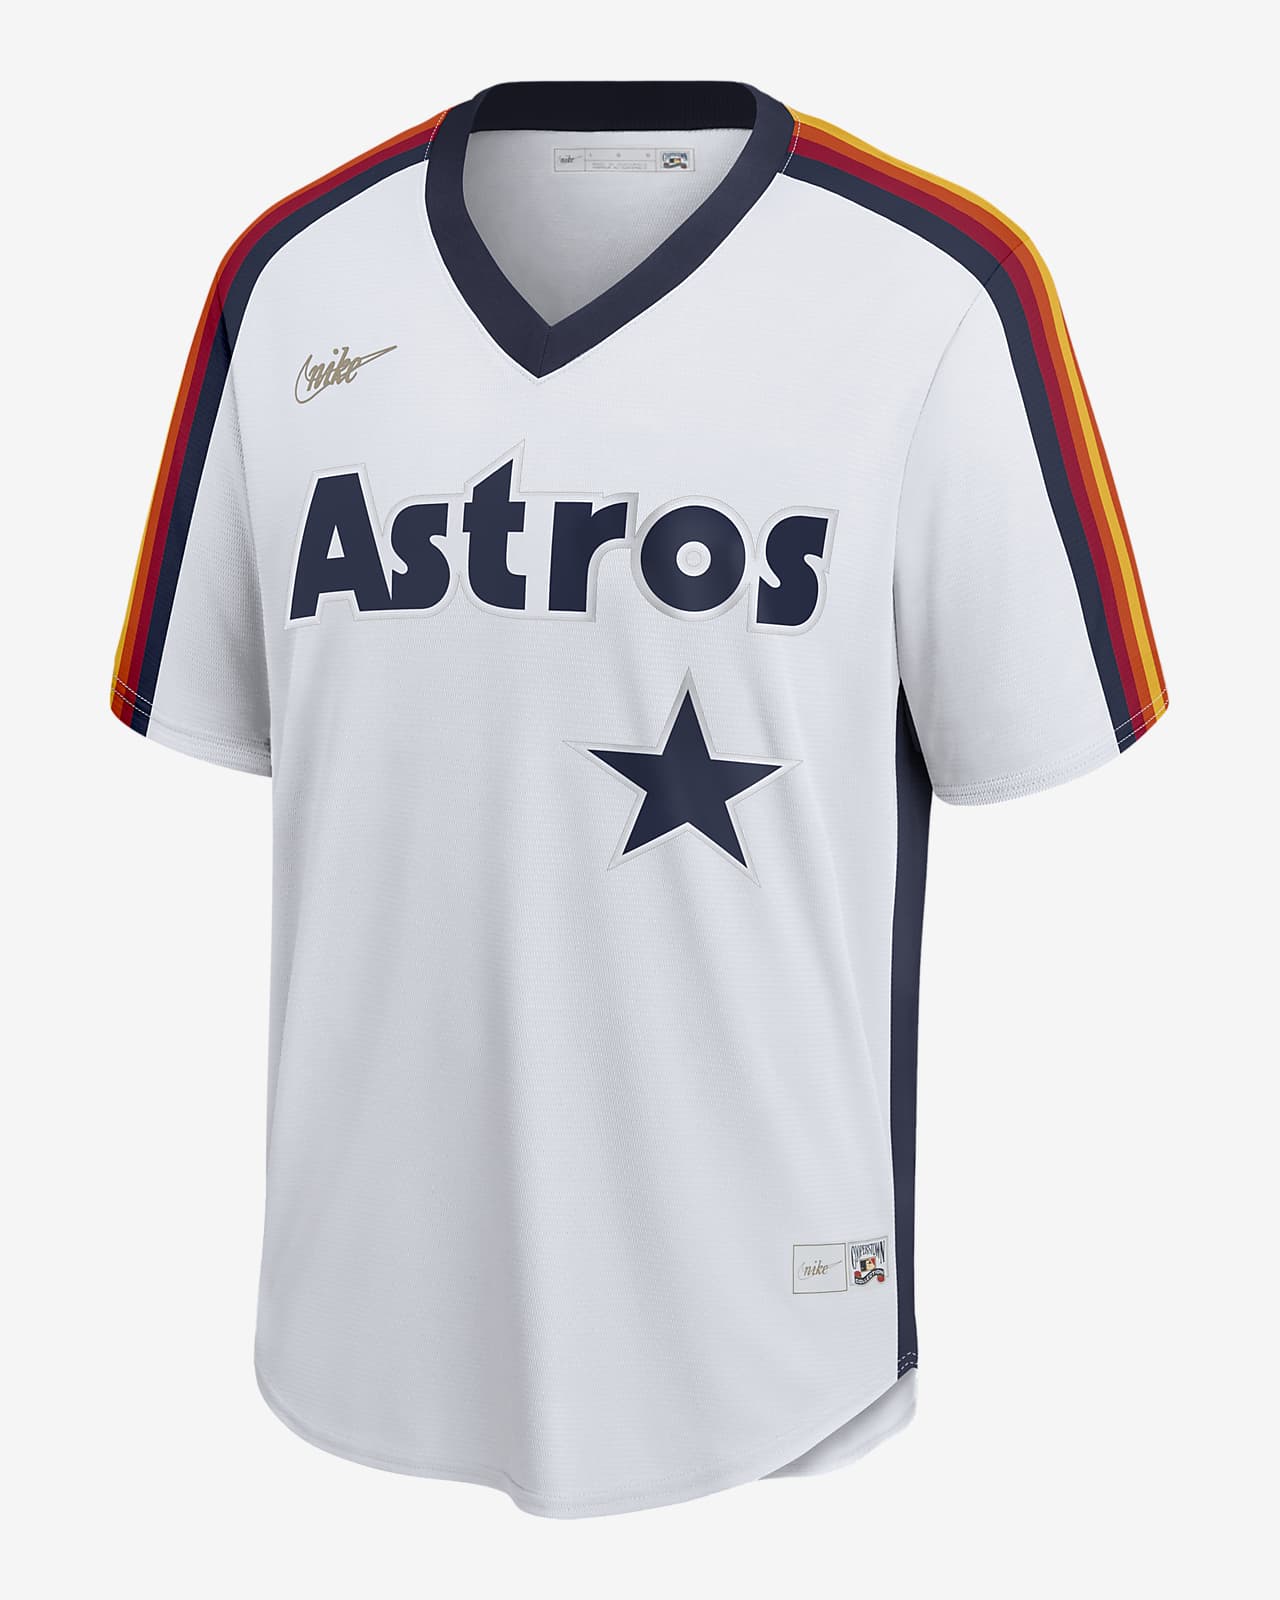 Houston Astros camisetas, Astros camisetas, Houston Astros uniformes